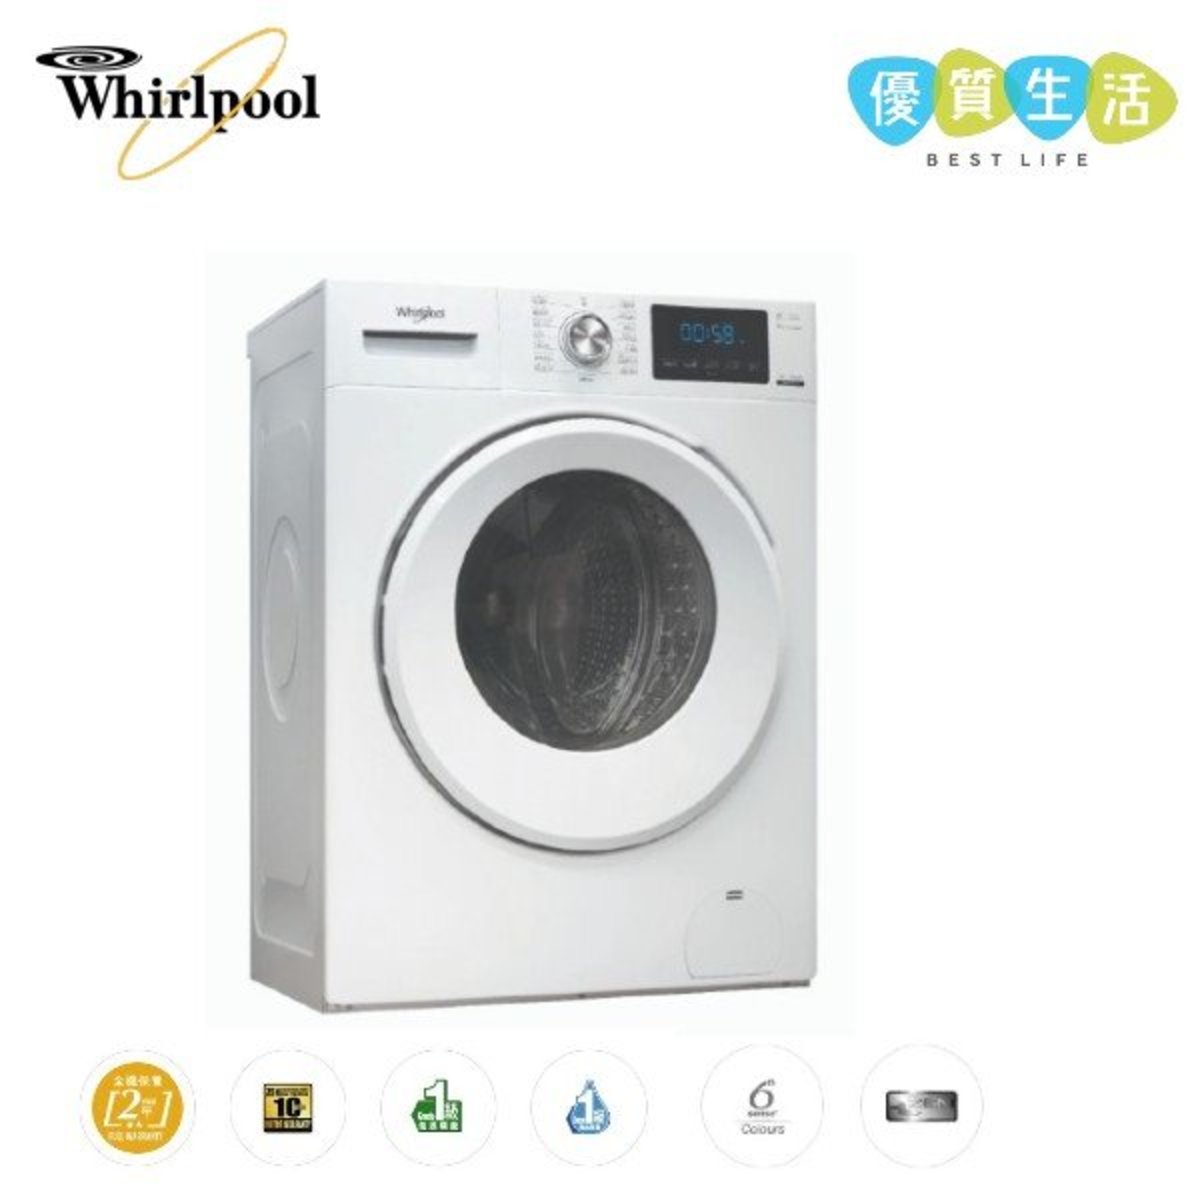 FRAL80111 820 Pure Care 高效潔淨前置滾桶式洗衣機 8公斤 / 1000轉/分鐘